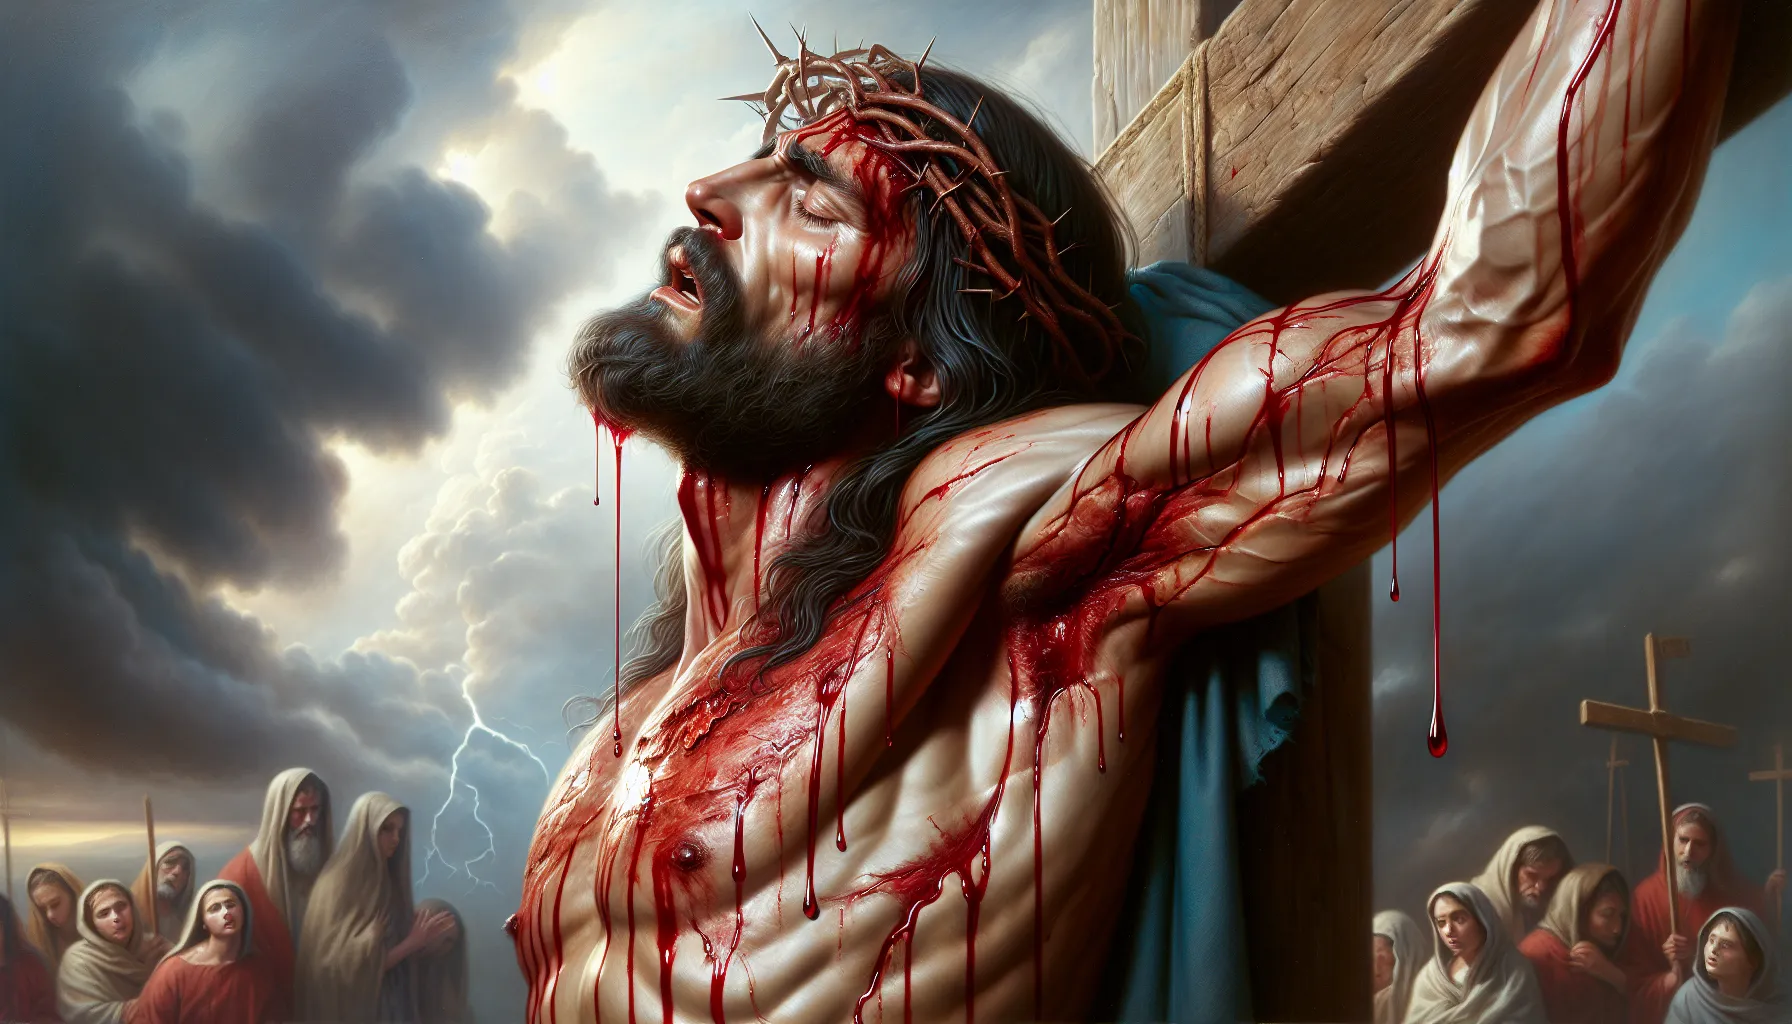 Representación simbólica del sacrificio y la redención a través de la sangre y el agua que brotan del costado de Jesús